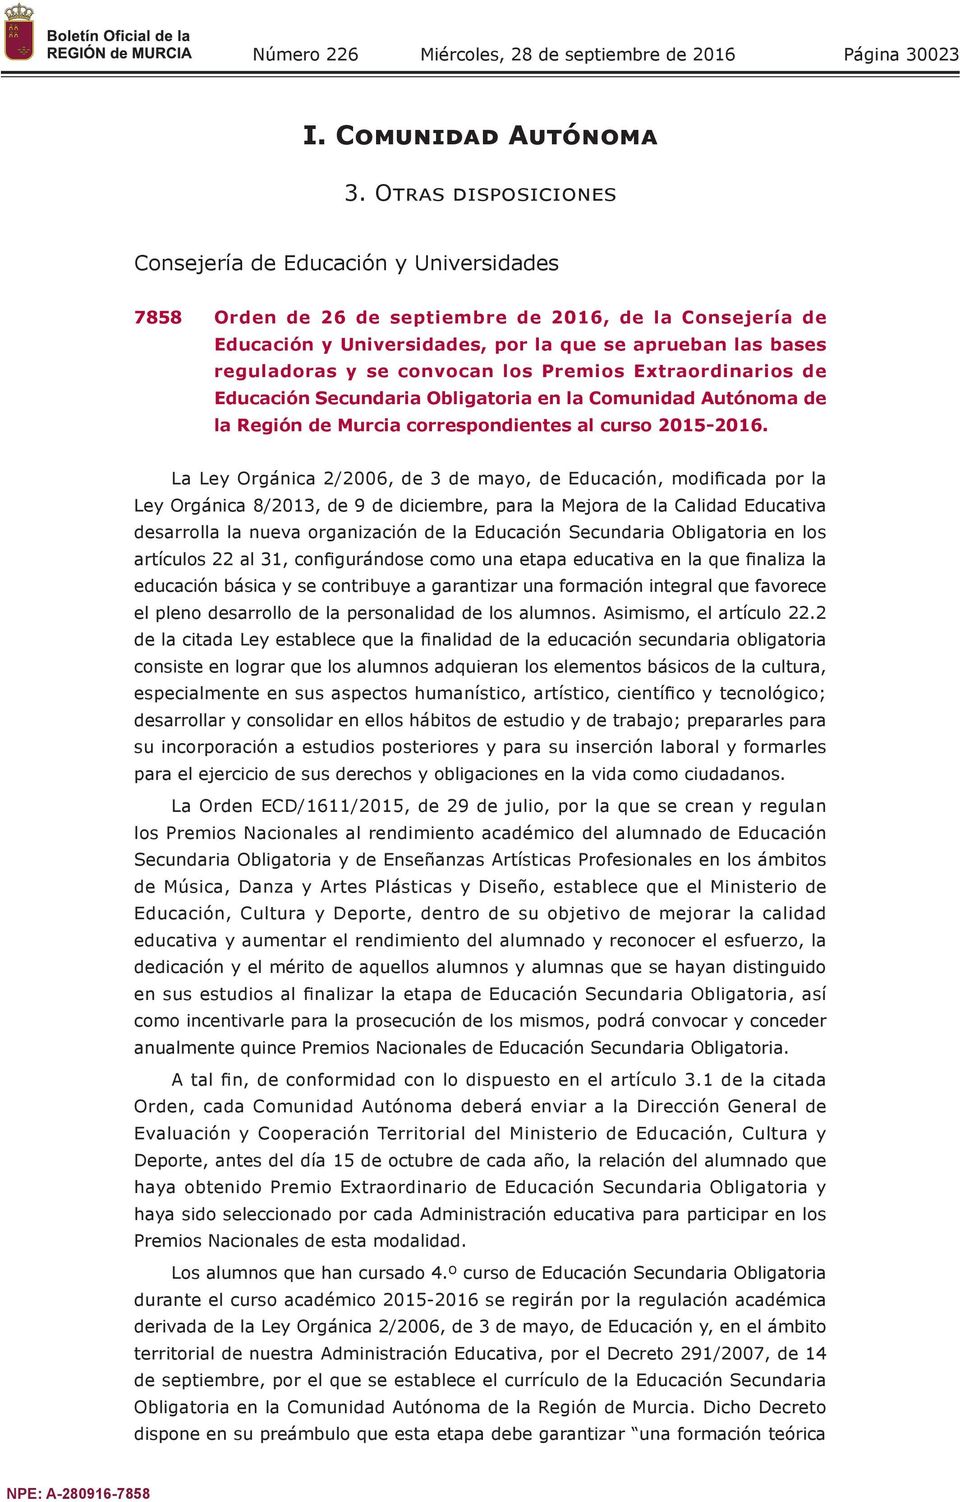 convocan los Premios Extraordinarios de Educación Secundaria Obligatoria en la Comunidad Autónoma de la Región de Murcia correspondientes al curso 2015-2016.